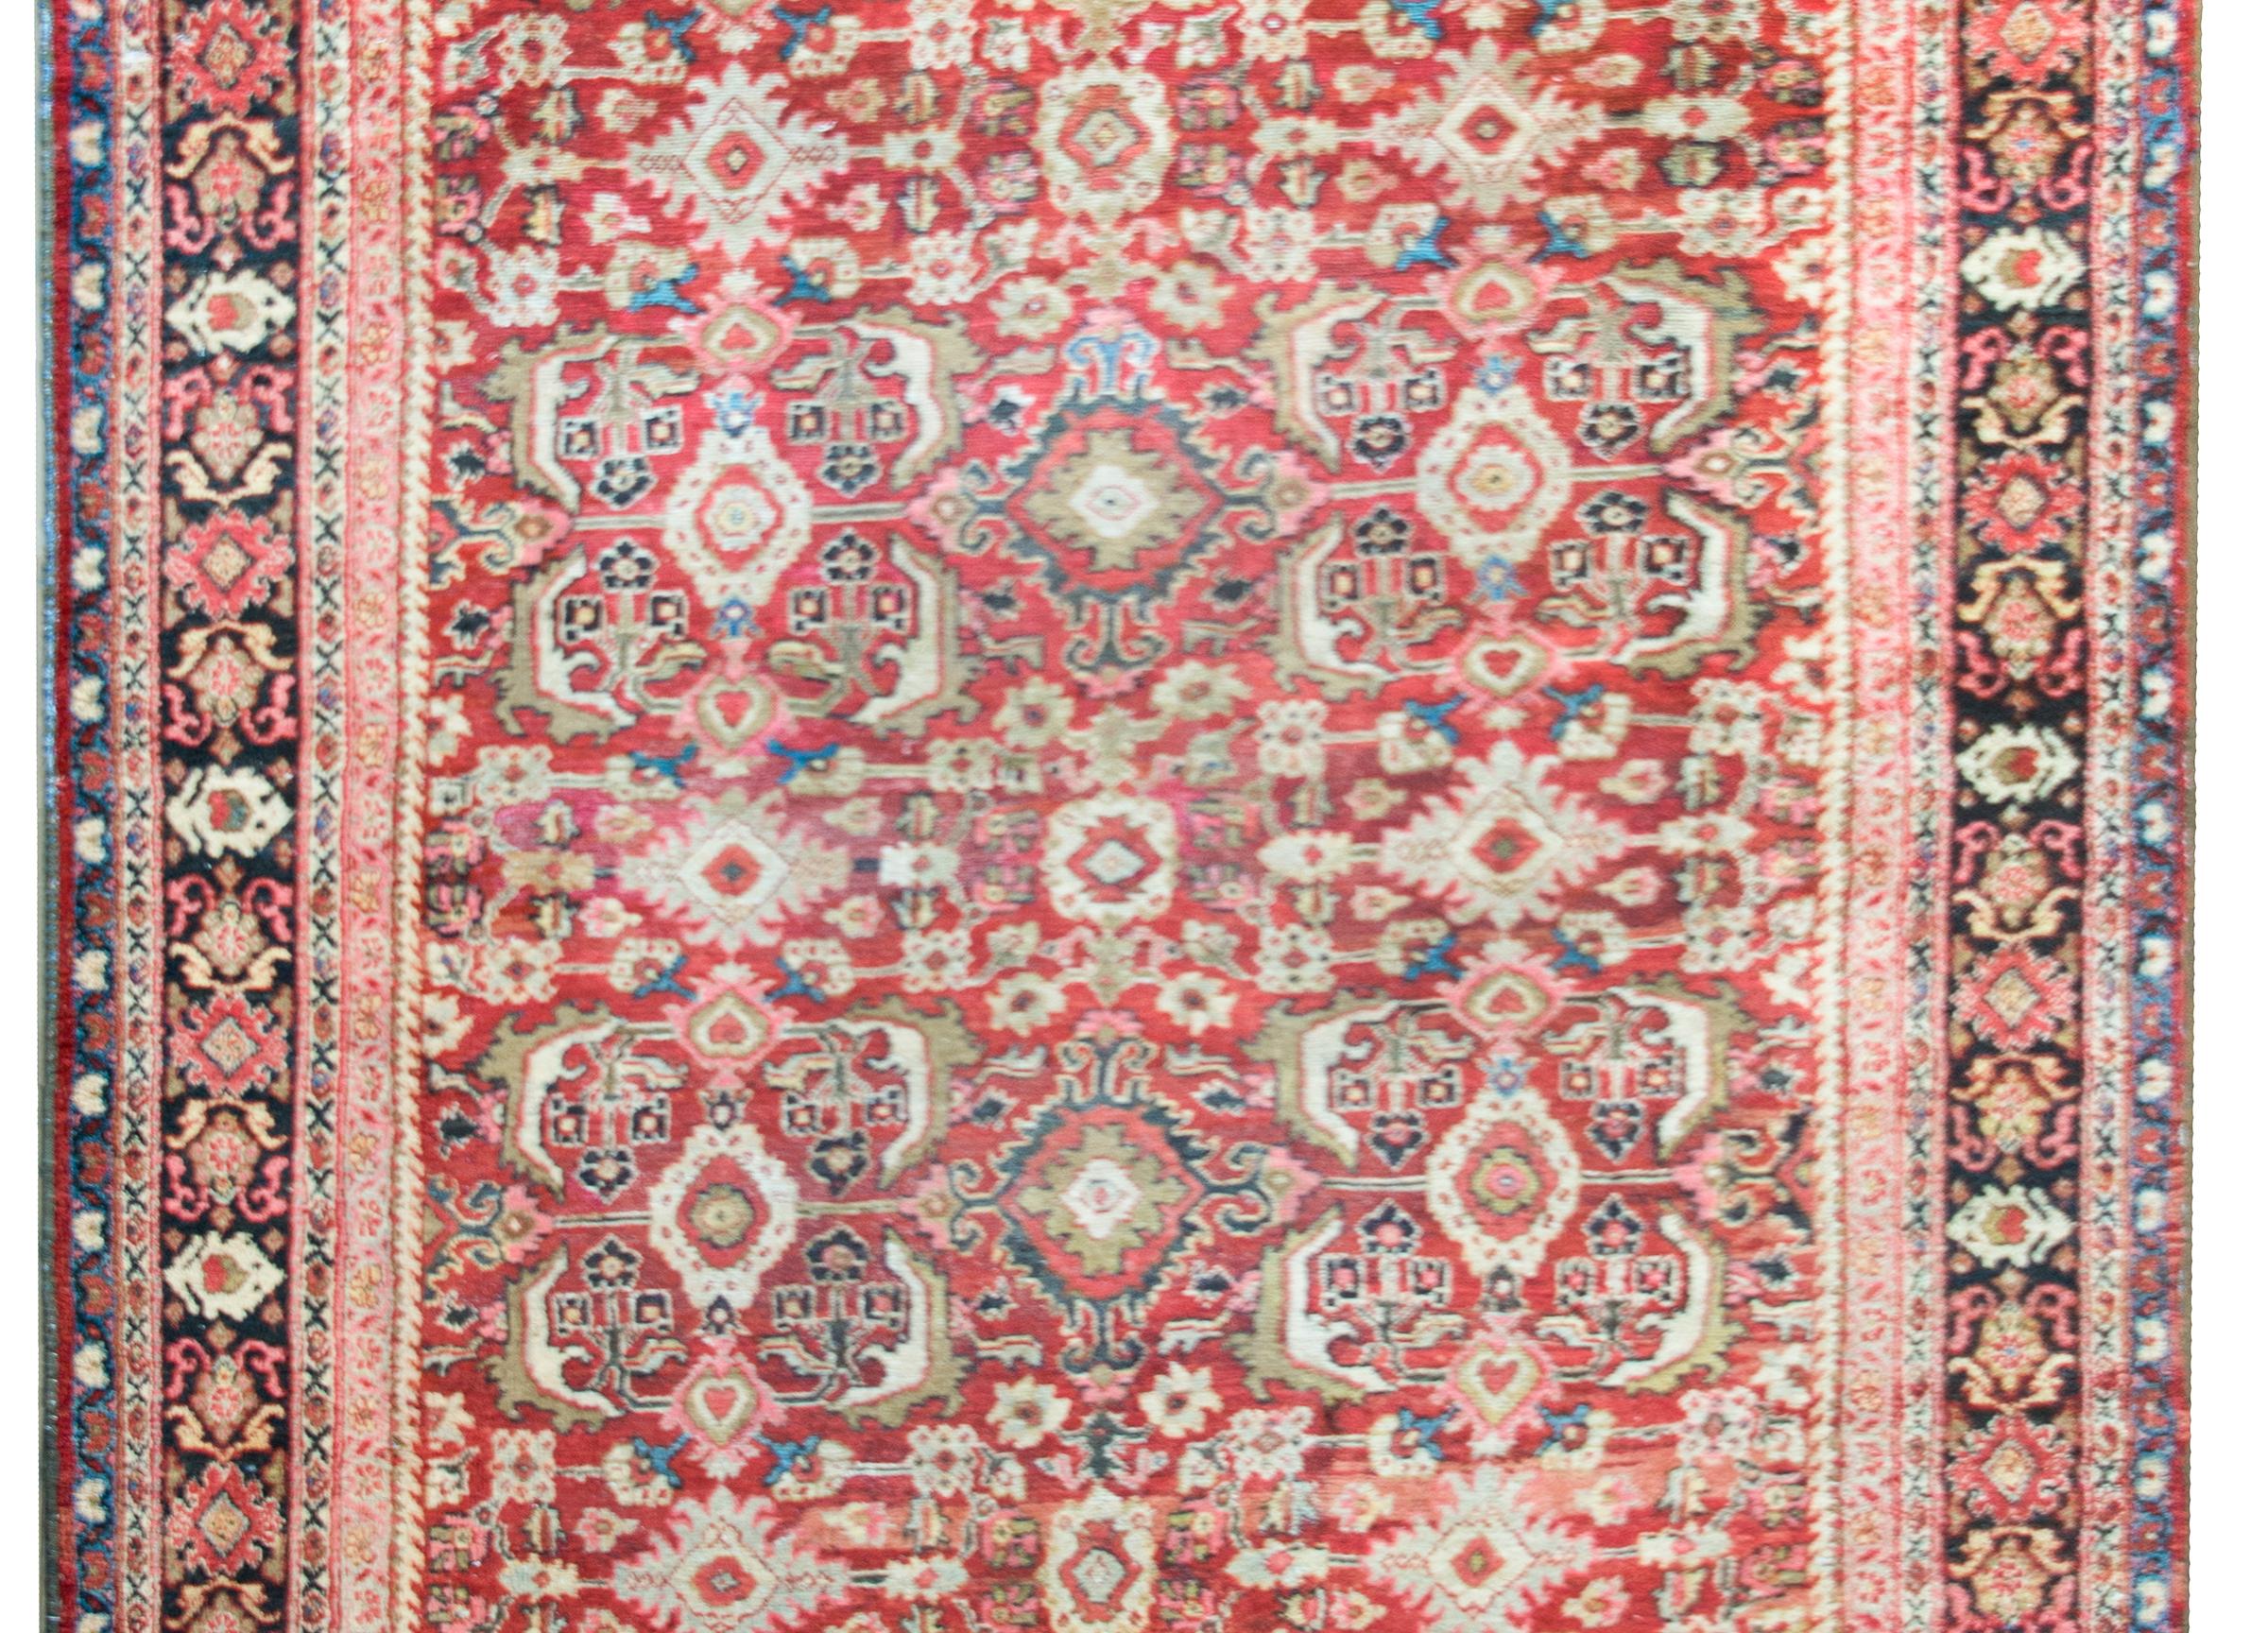 Ein atemberaubender persischer Meshkabad-Teppich aus dem frühen 20. Jahrhundert mit einem floralen All-Over-Muster, das unzählige großflächige Blumen, Blätter und Ranken enthält, die von mehreren floral gemusterten Streifen umgeben sind.